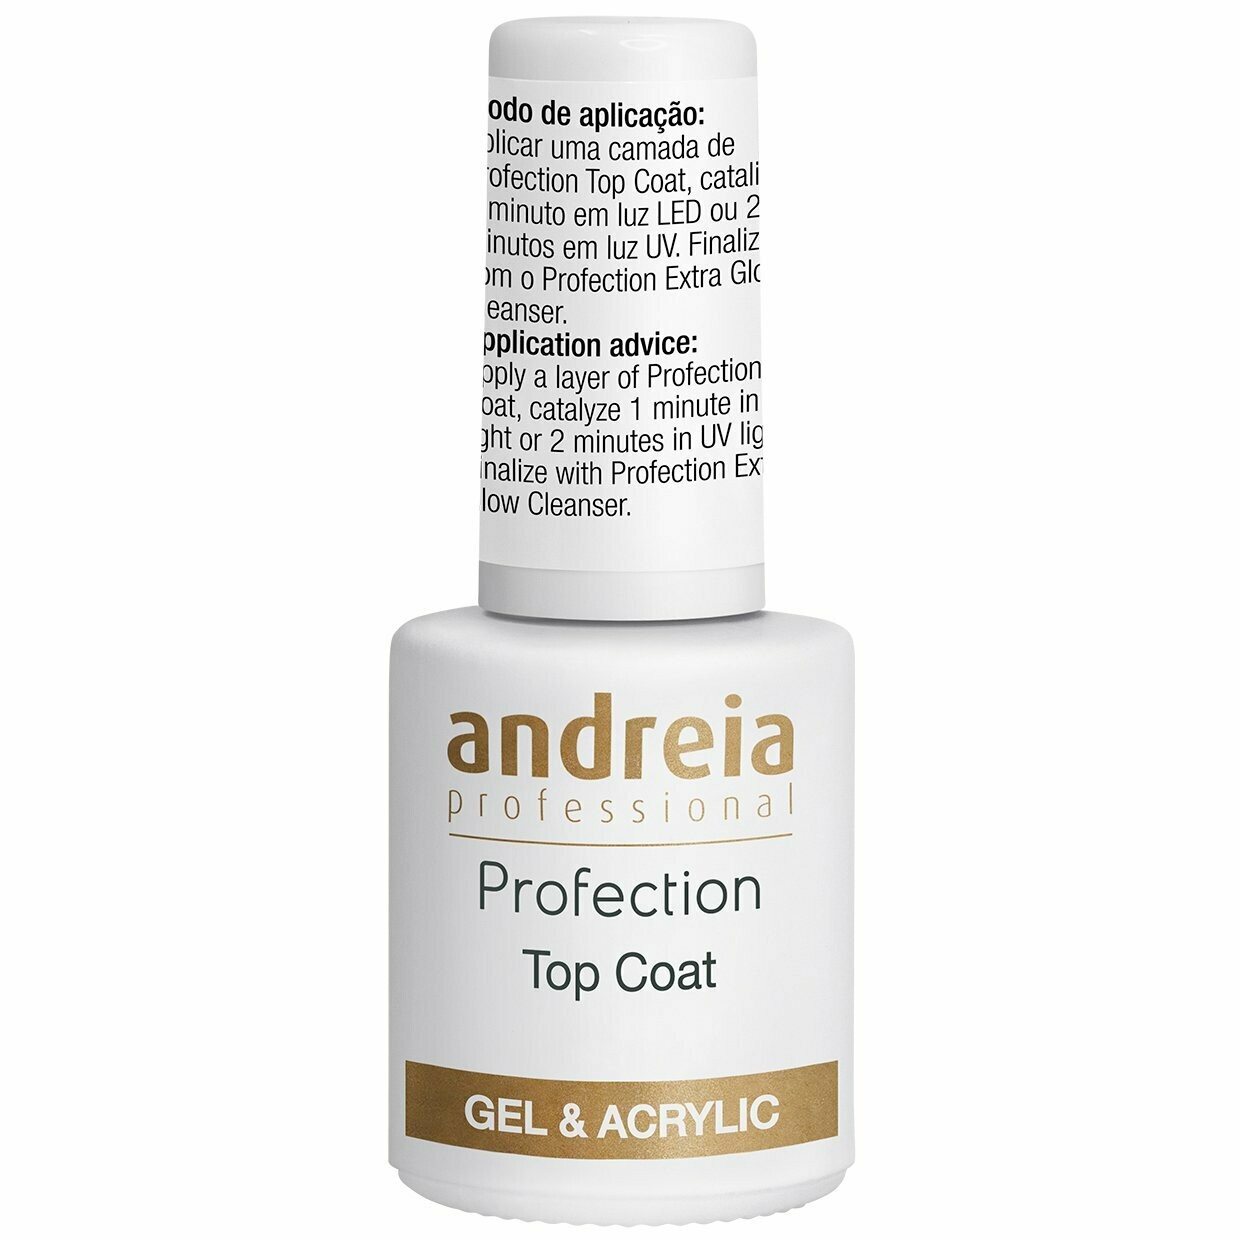 Andreia Professional Profection Top Coat Mate para Gel y Acrílico